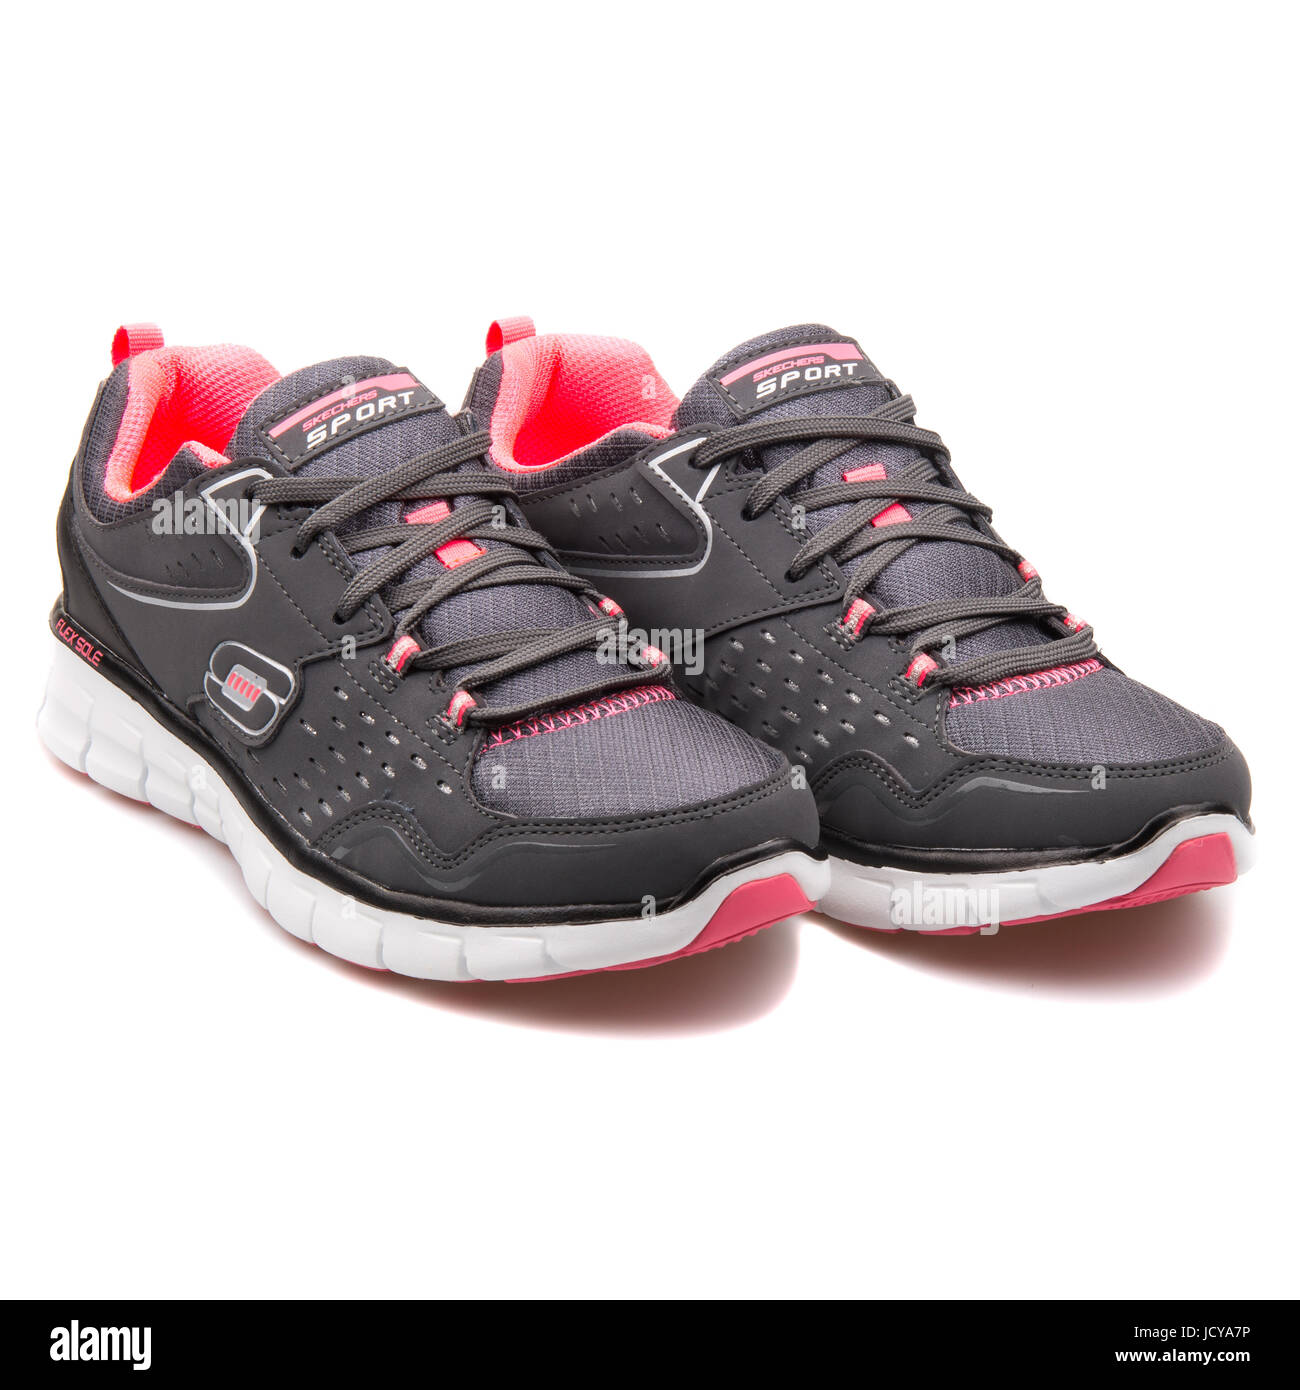 Lære udenad respons På jorden Skechers Synergy-Front Row Charcoal Black Women's Running Shoes -  12013-CCBK Stock Photo - Alamy